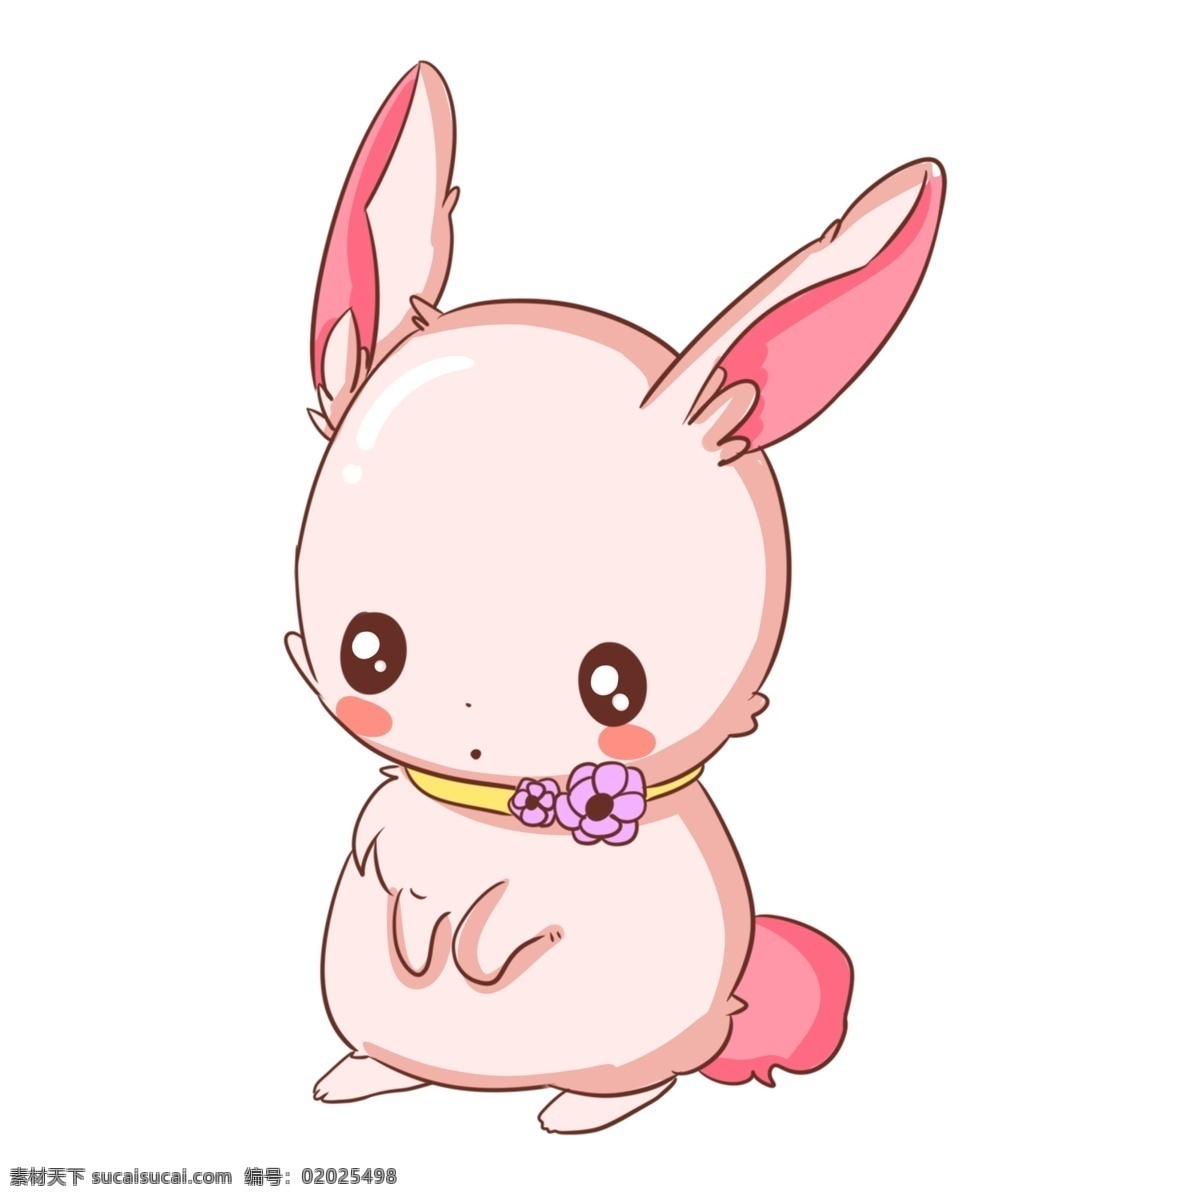 手绘 可爱 兔子 插画 卡通插画 手绘兔子插画 粉色的花朵 长长的耳朵 粉色的兔子 拟人的兔子